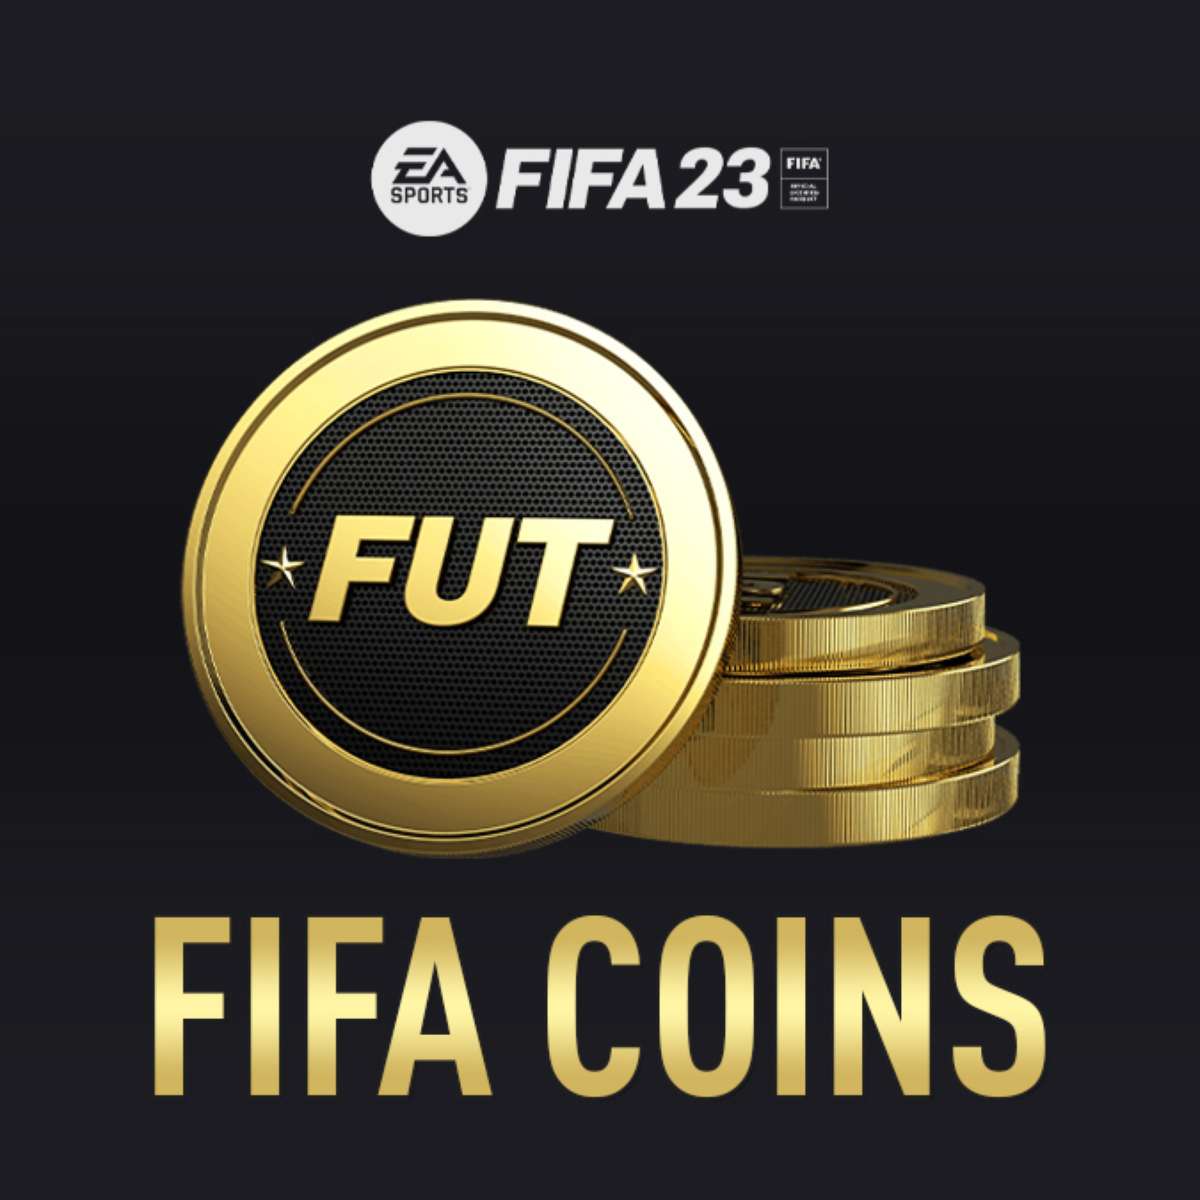 Atualização de meio de temporada do FIFA Mobile 22 começa em novembro de  2022